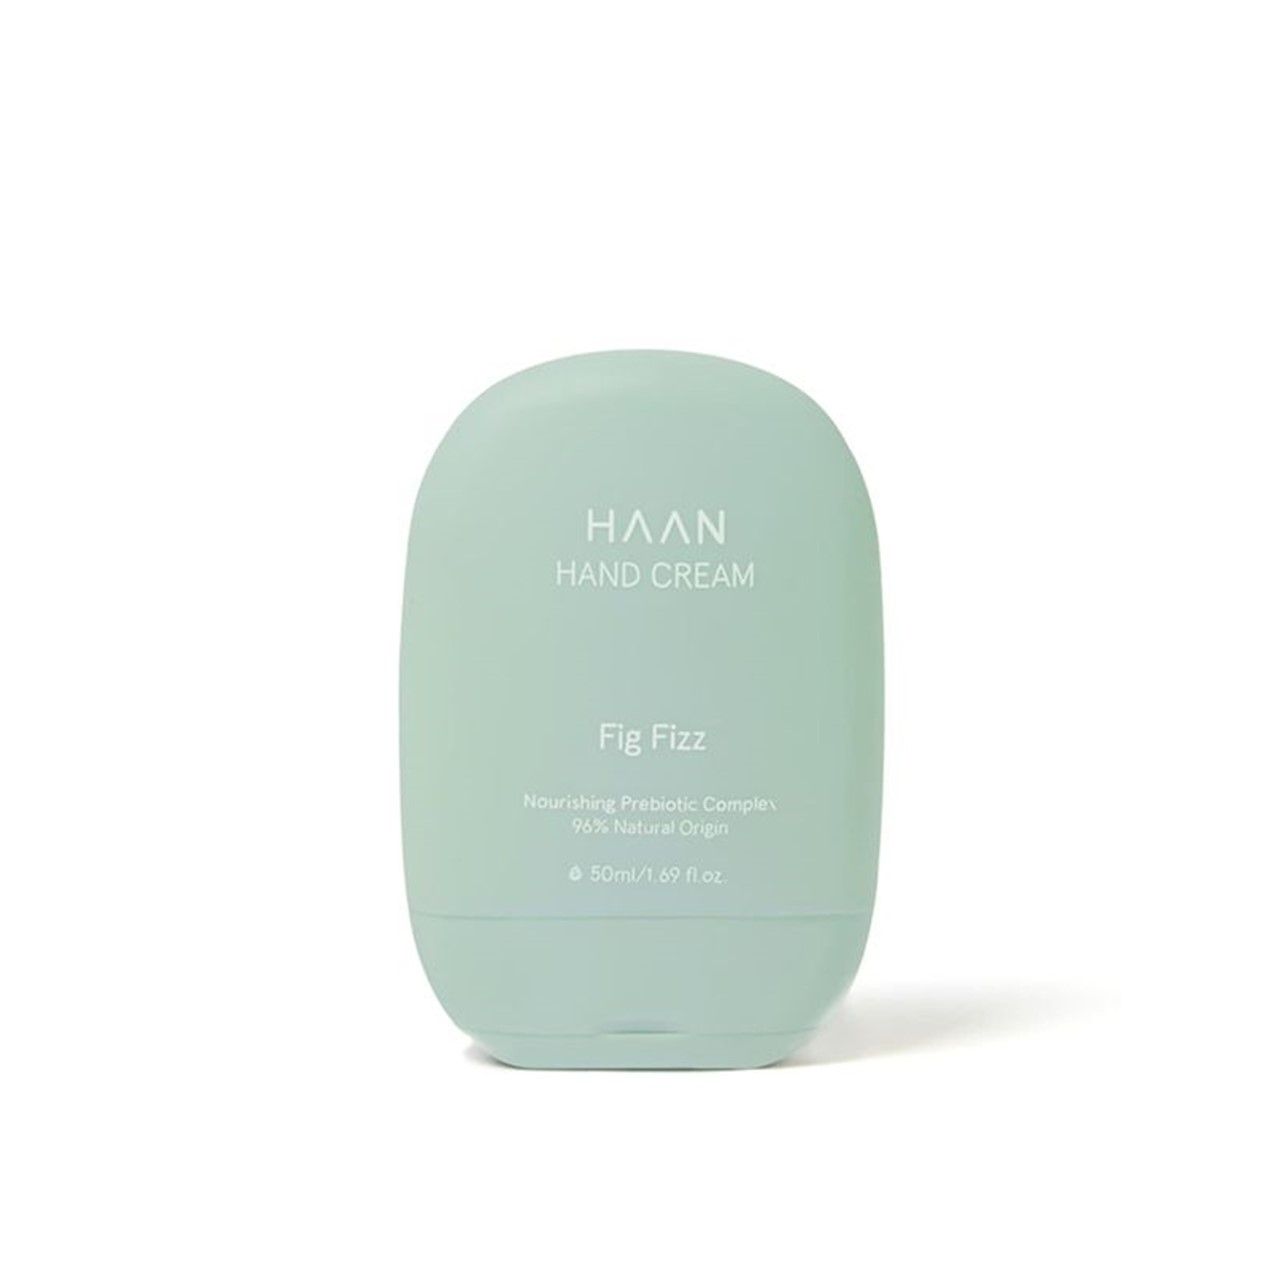 HAAN Fig Fizz Hand Cream 50ml (1.69fl oz)